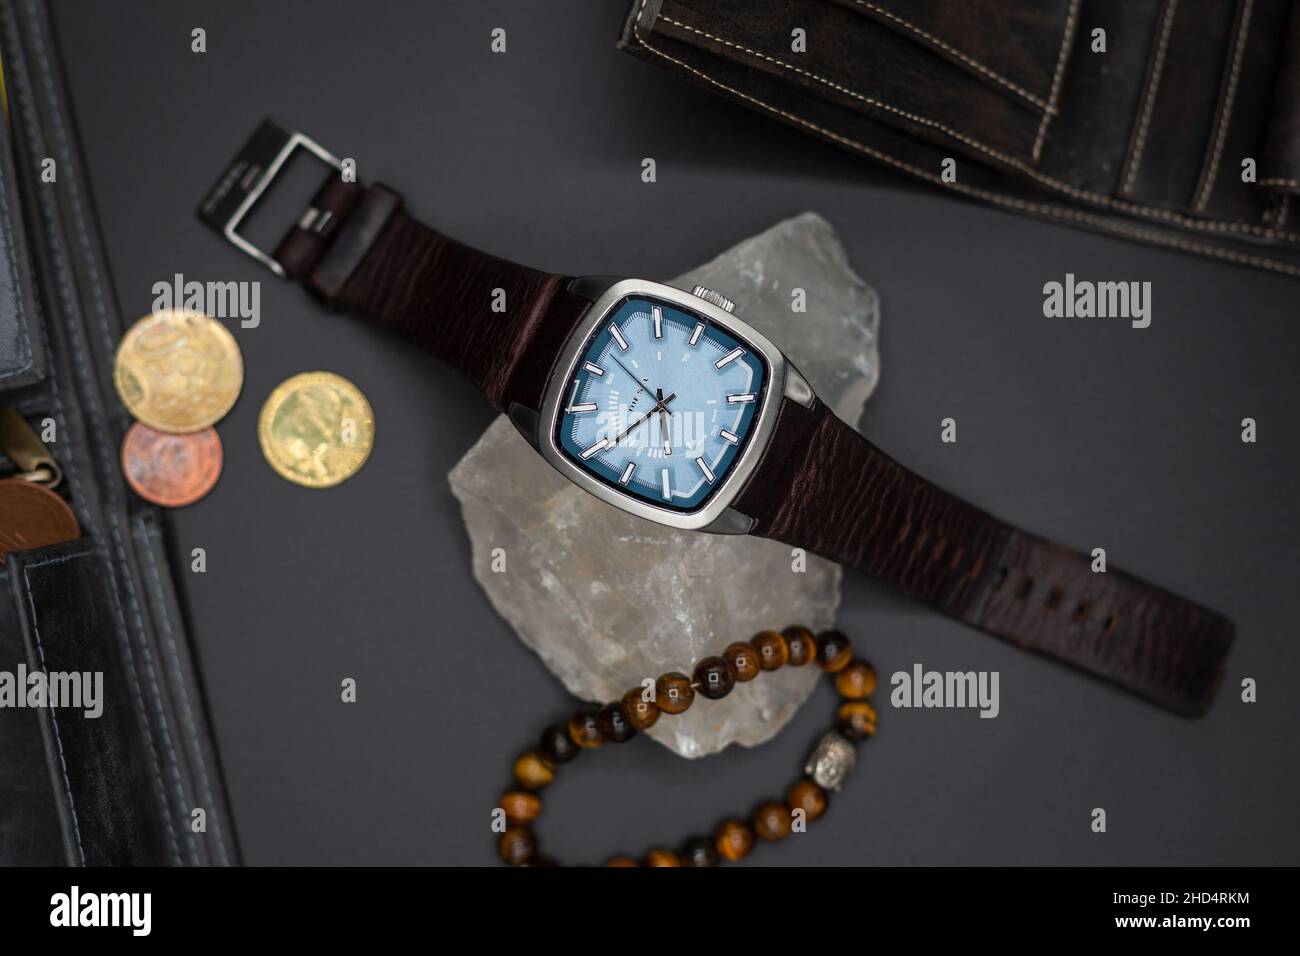 Vista dall'alto di un orologio Diesel con cintura in pelle su una pietra e braccialetto accanto alle monete su una superficie piana Foto Stock